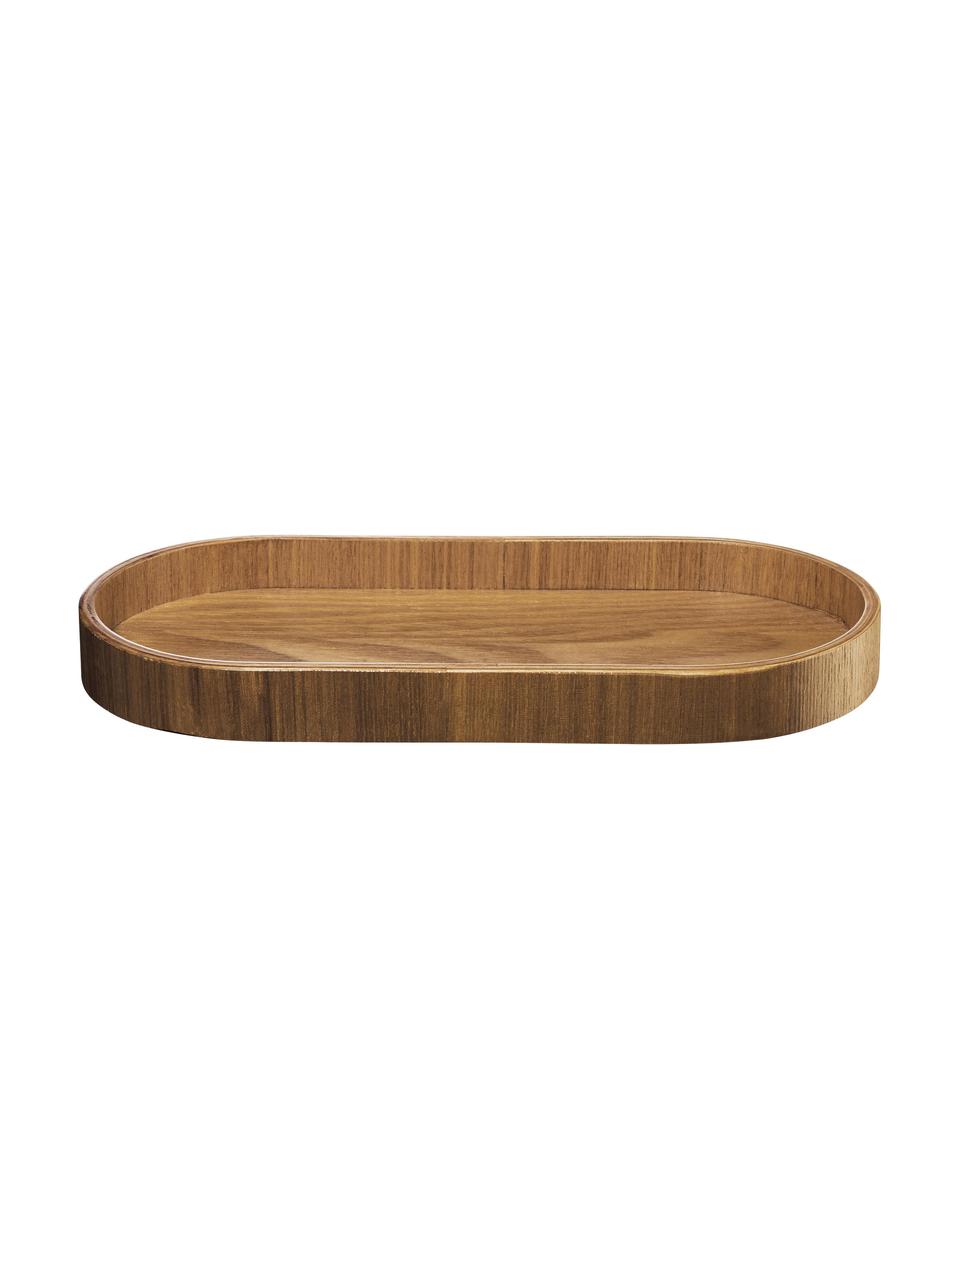 Servírovací talíř z vrby Wood, různé velikosti, Vrbové dřevo, Tmavé dřevo, D 23 cm, Š 11 cm